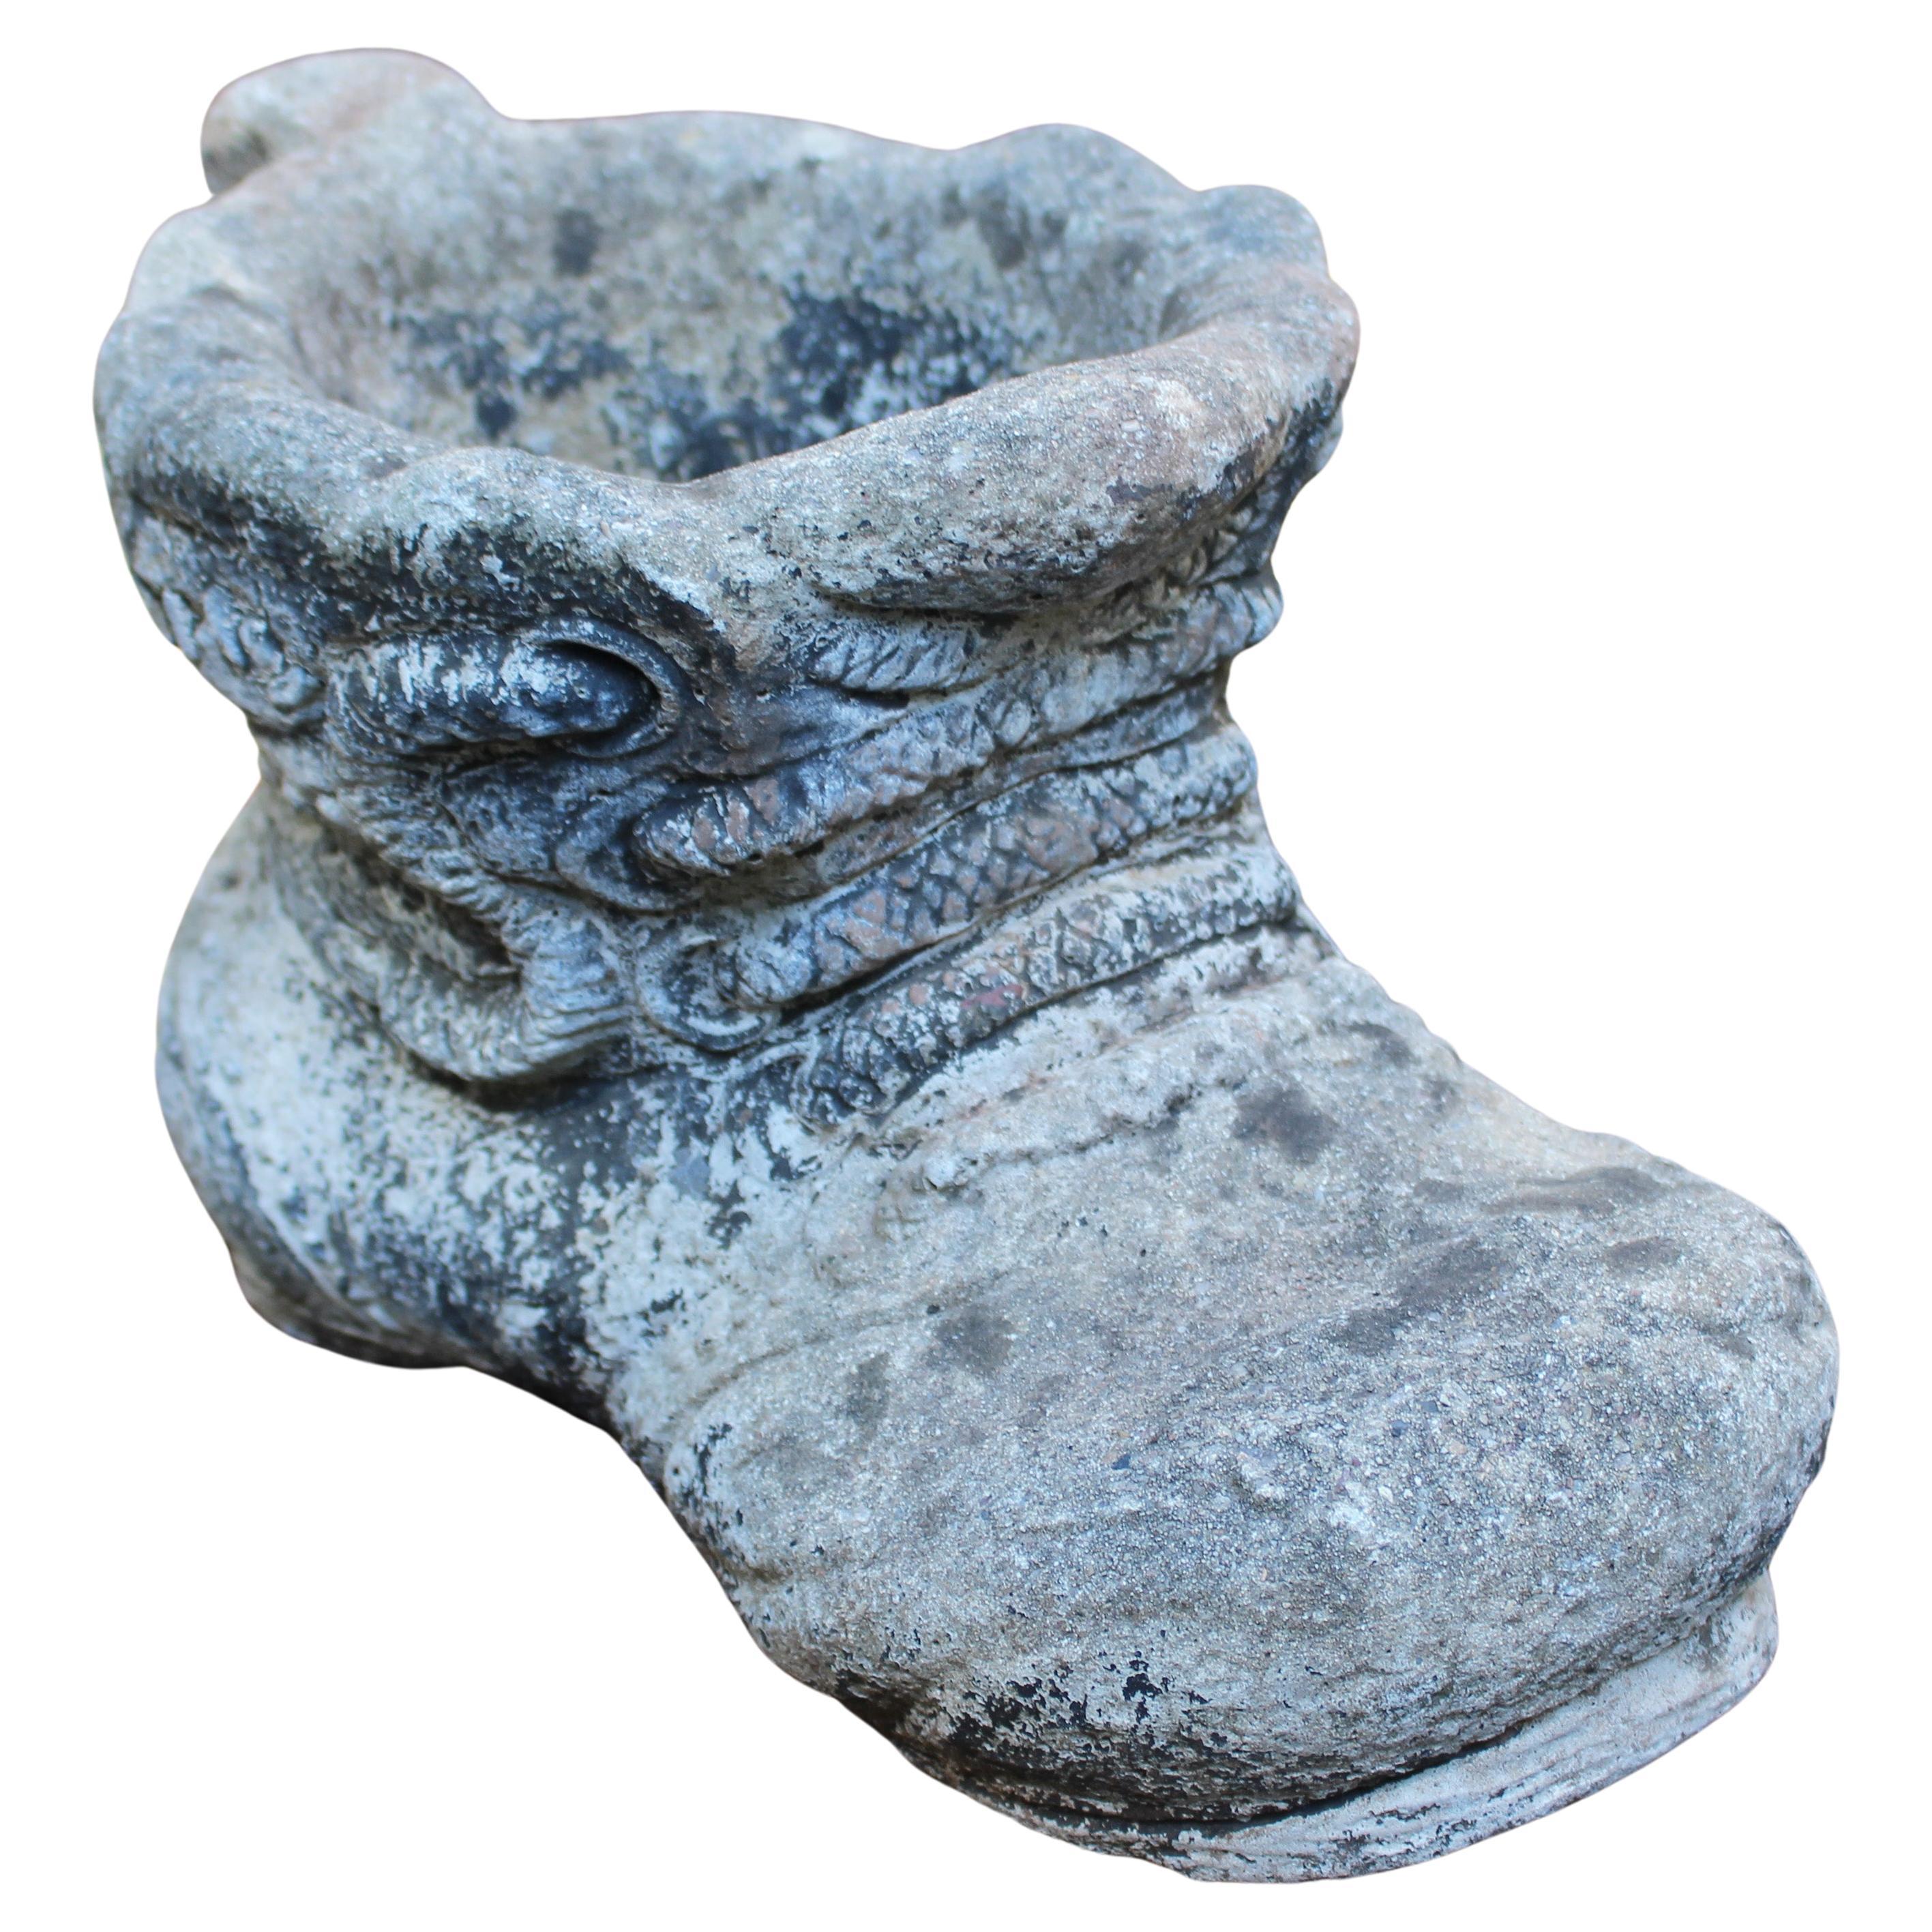 Jardinière anglaise en pierre moulée en forme de chaussure de géant